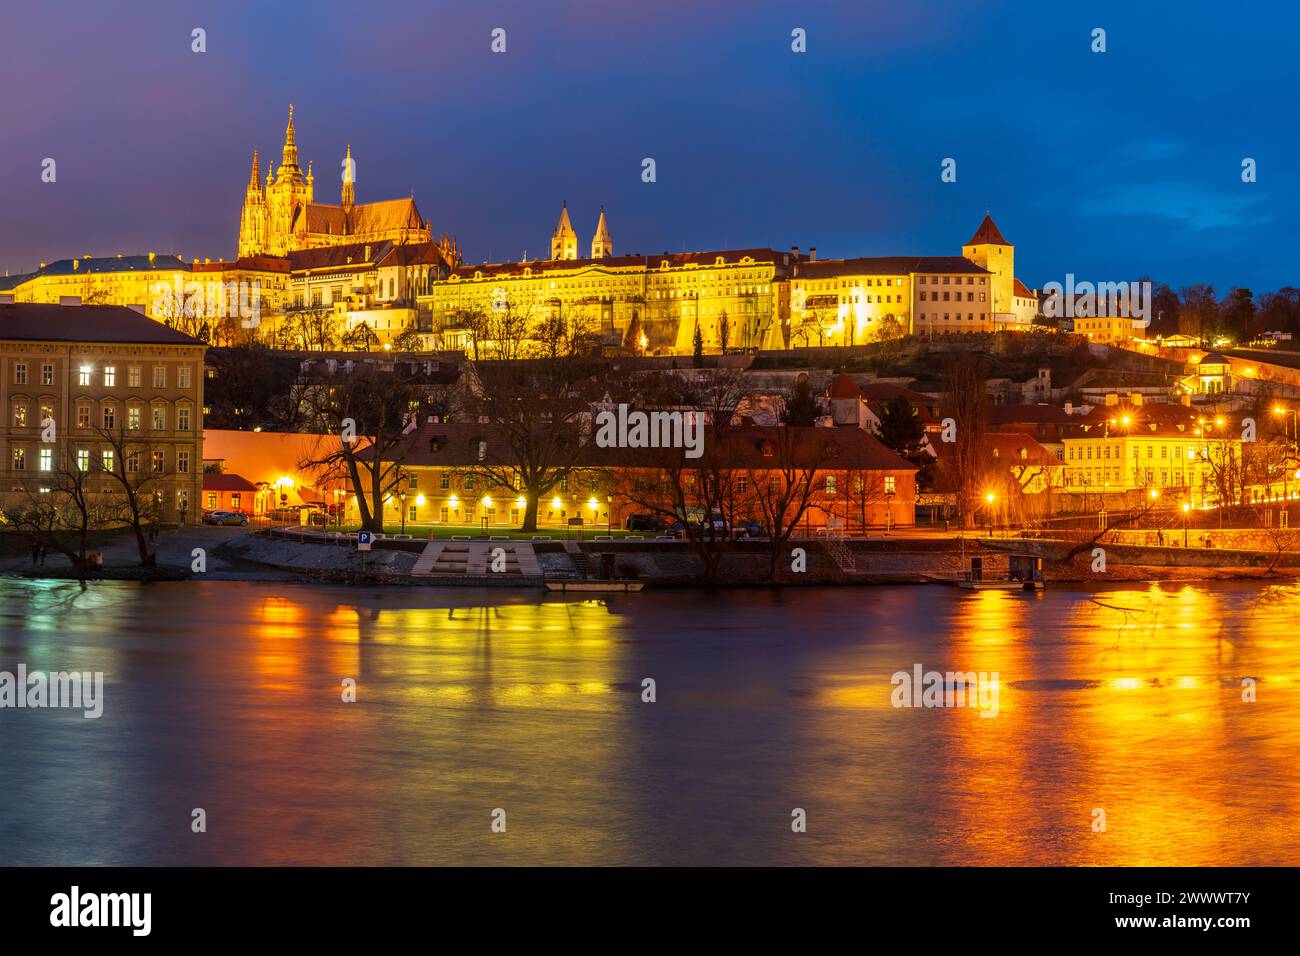 Palacio Lobkowicz y St. Catedral de Vitus por la noche, Praga, República Checa Foto de stock